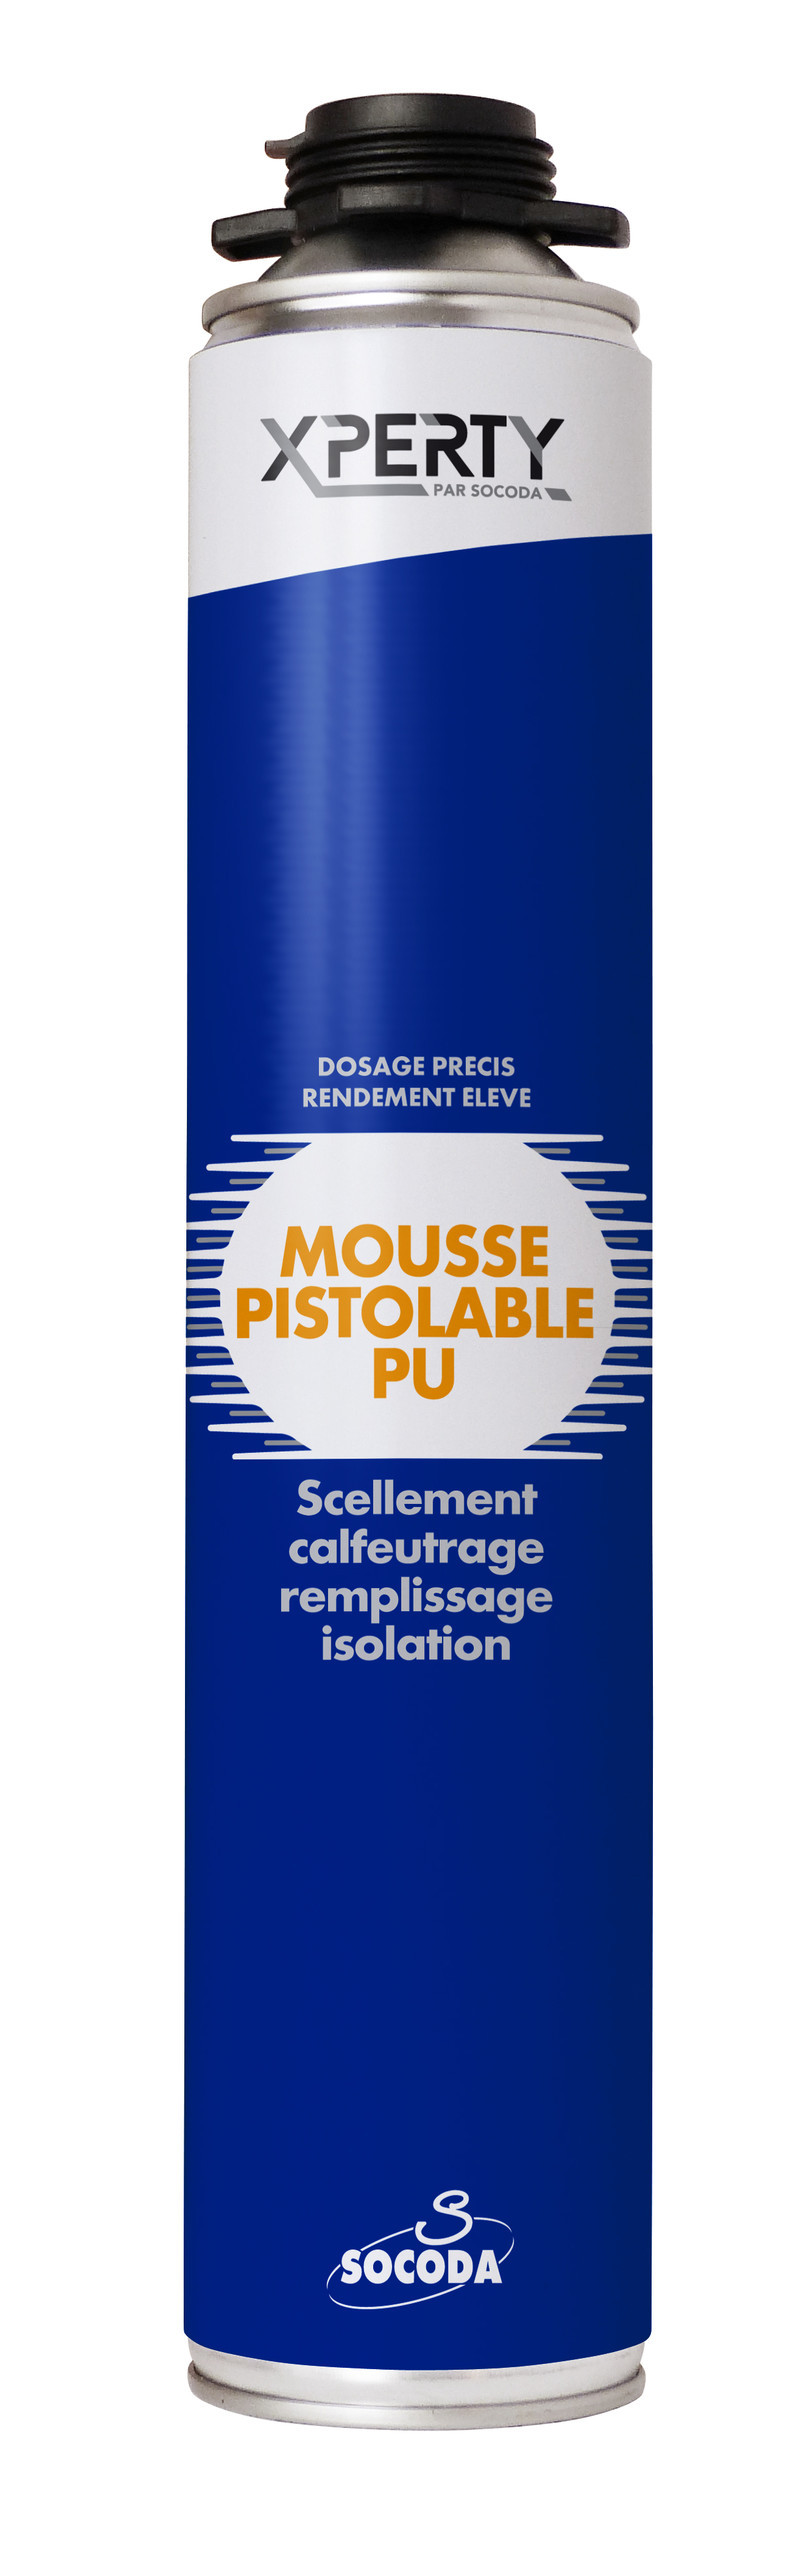 Mousse polyuréthane pistolable - 123777 - Soudal - Mon Habitat Electrique